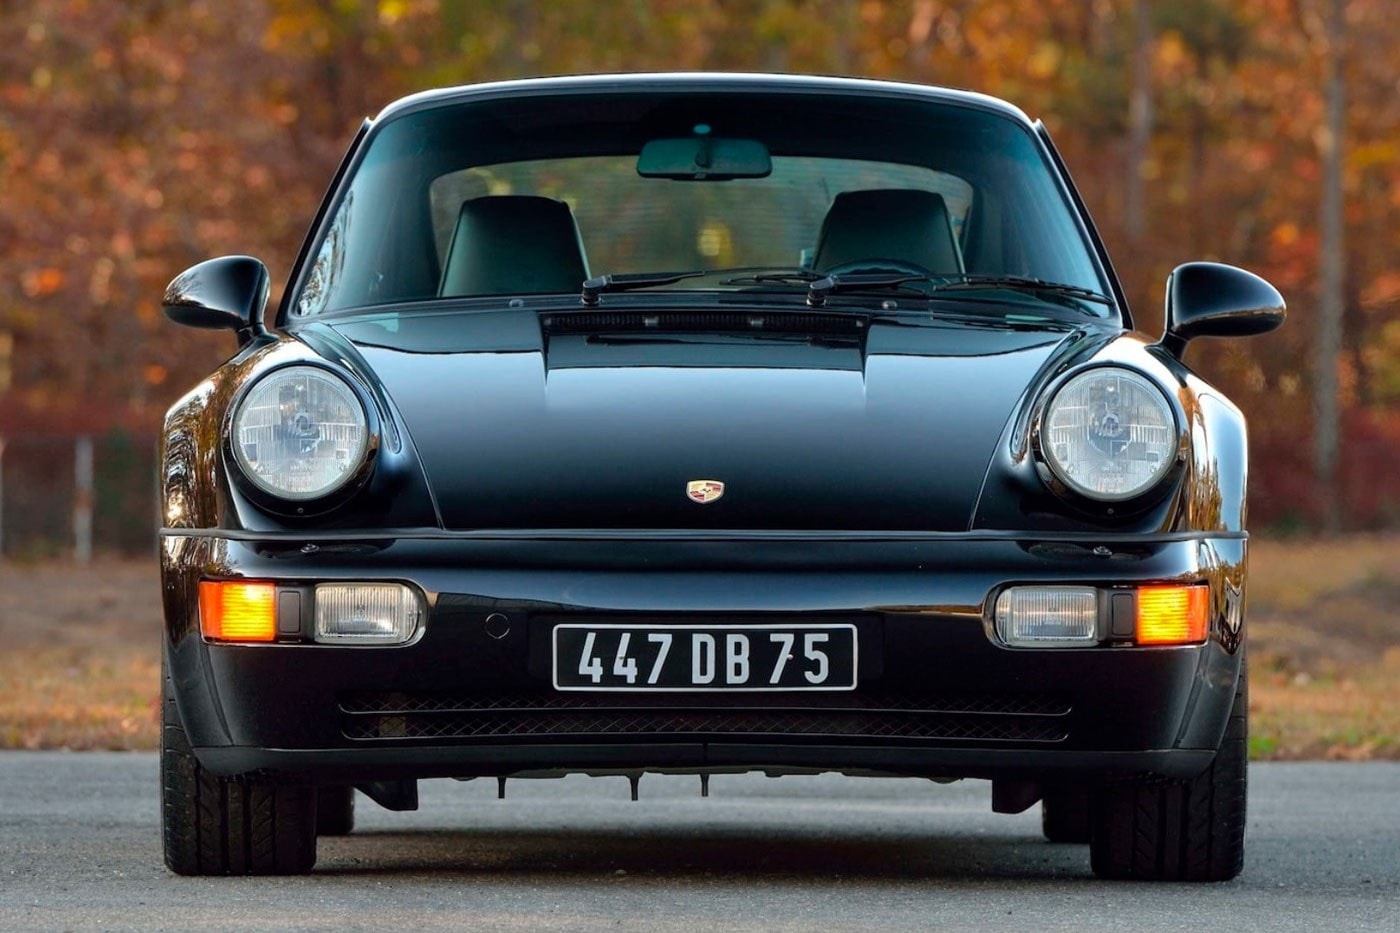 電影《Bad Boys》經典 1994 Porsche 911 Turbo 即將展開拍賣